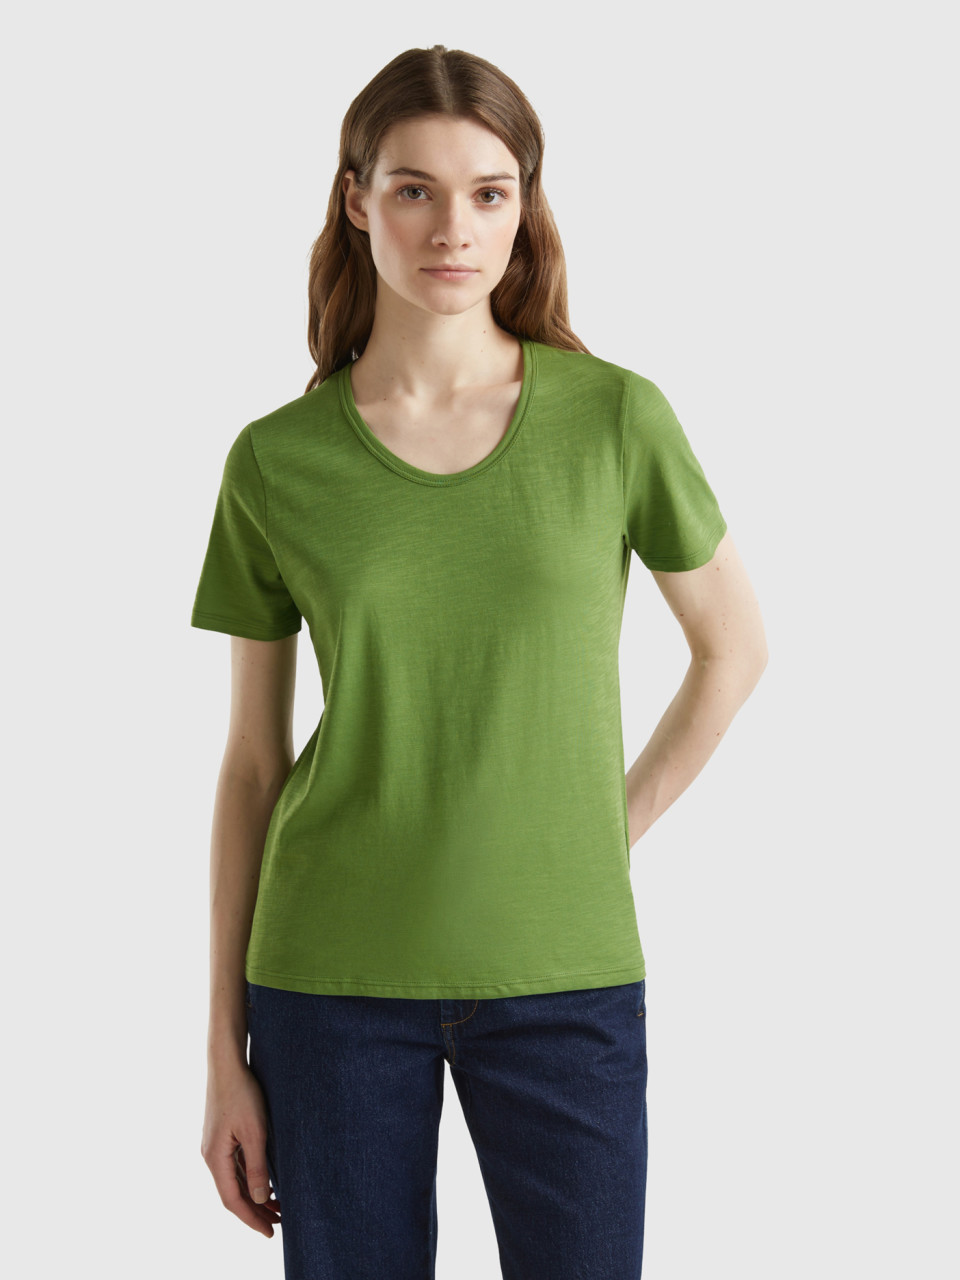 Benetton, Short Sleeve T-shirt Lightweight Cotton, Military Green, Women